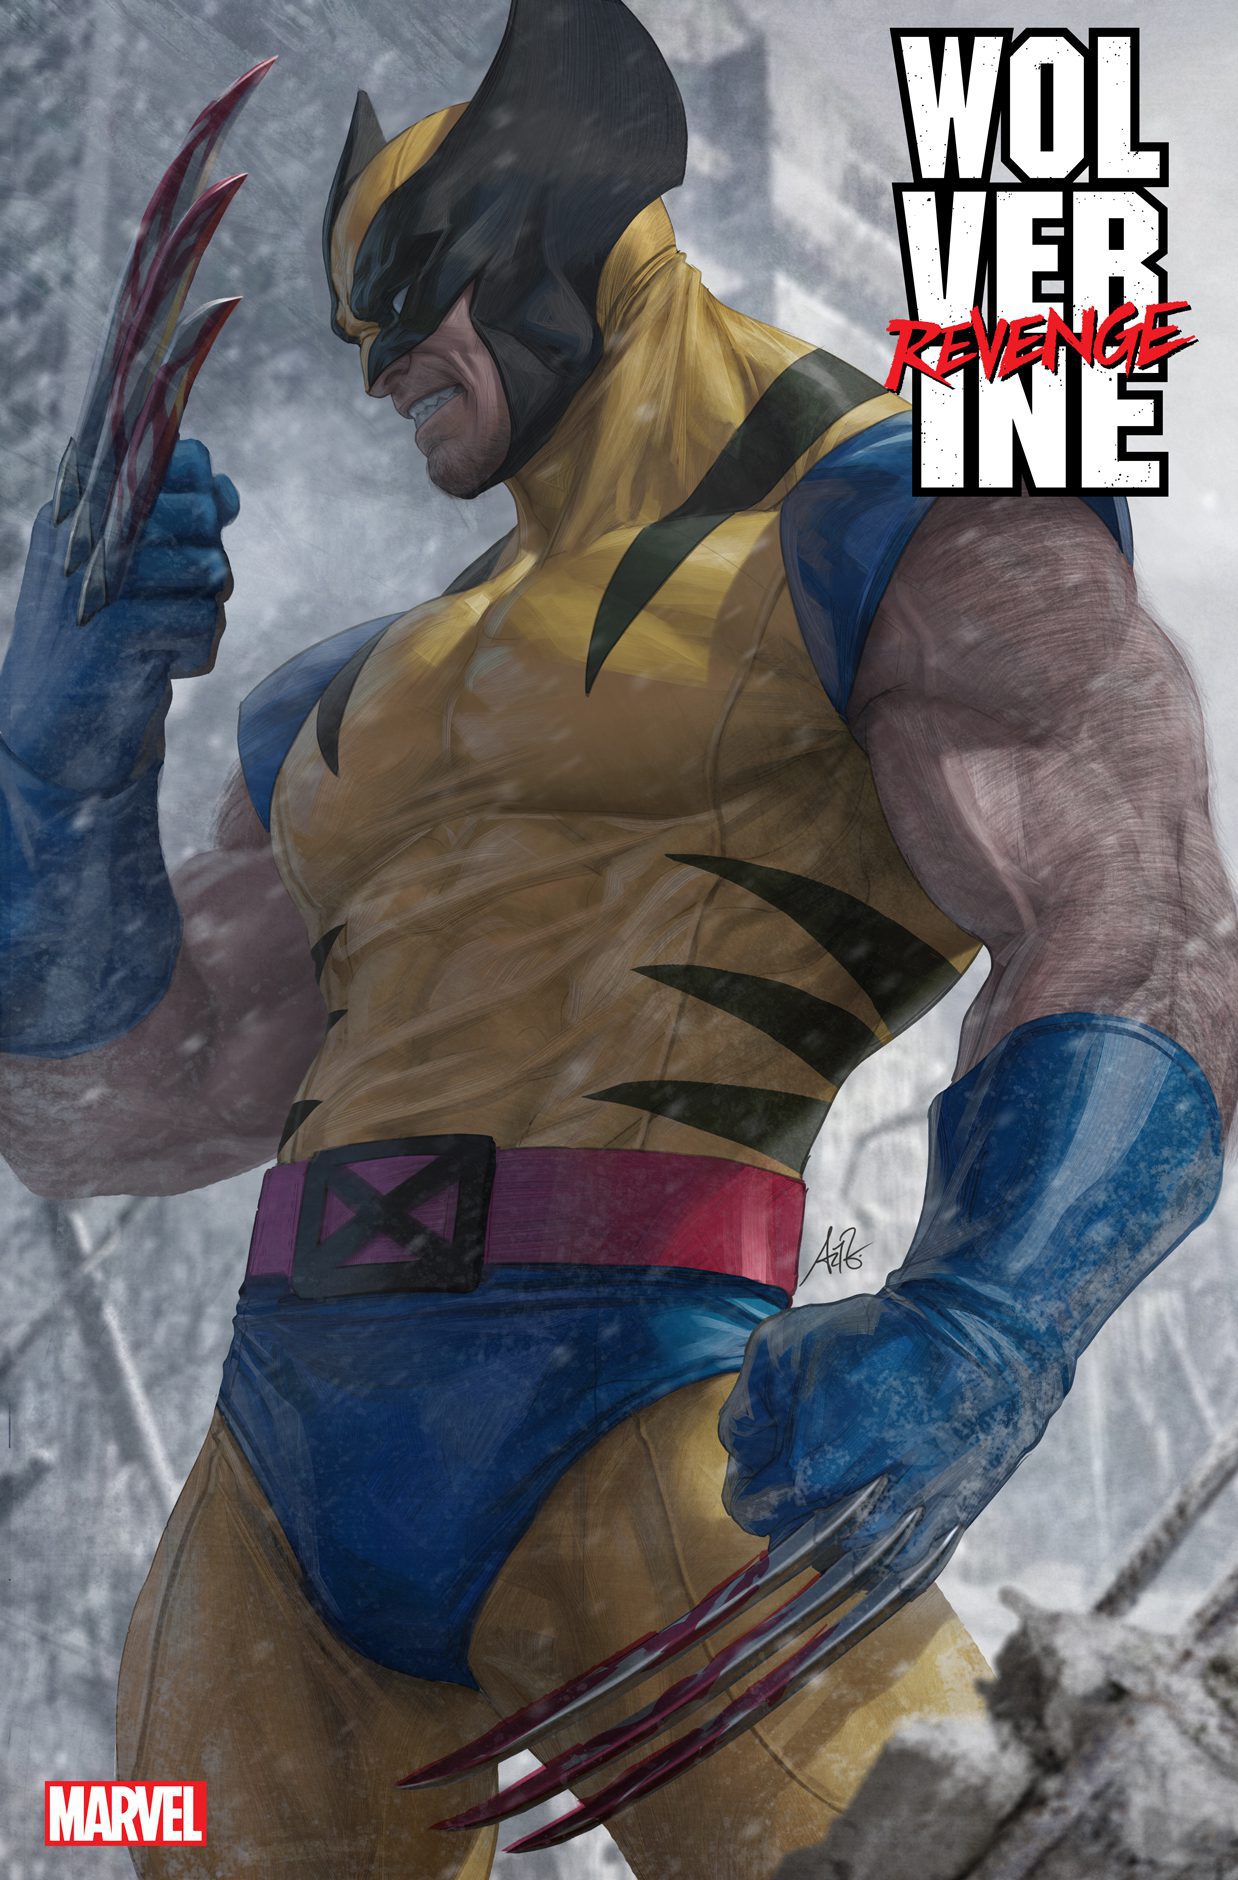 Wolverine Revenge #1 cover